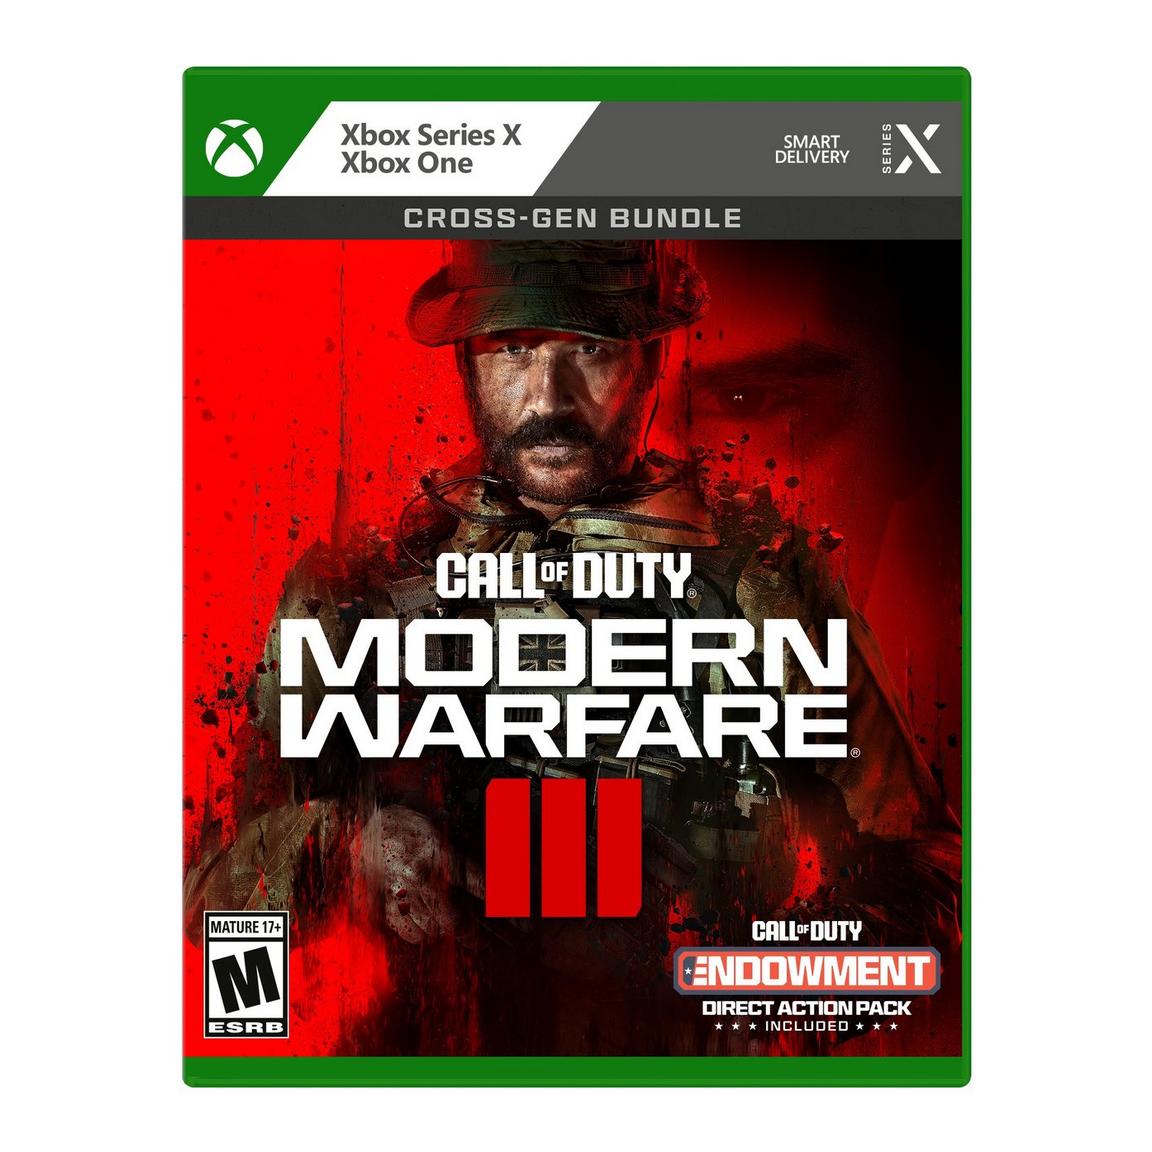 Видеоигра Call of Duty: Modern Warfare III Cross-Gen Bundle - Xbox Series X and Xbox One игра call of duty modern warfare ii cross gen bundle для xbox one и xbox series x s аргентина русский перевод электронный ключ